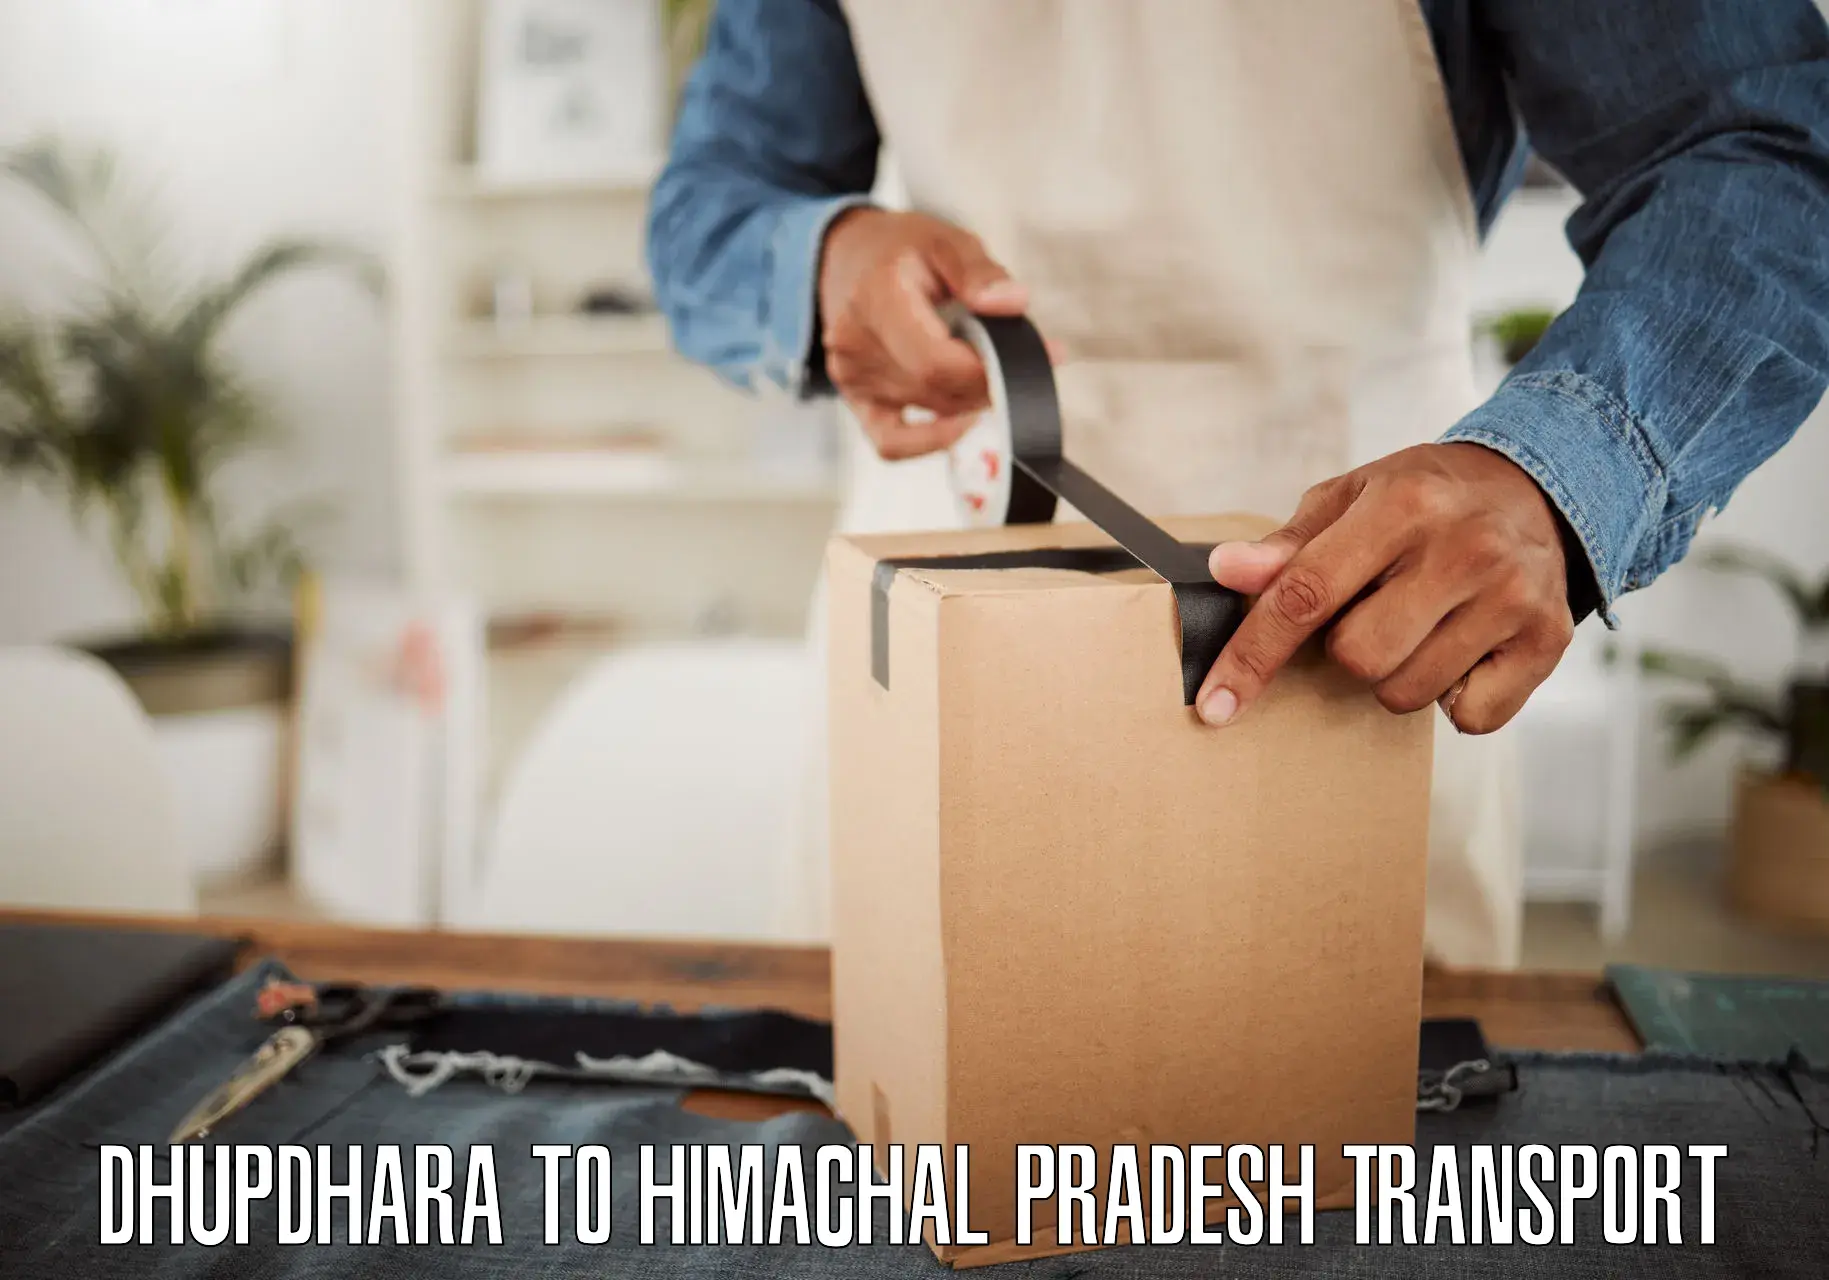 Furniture transport service Dhupdhara to Dheera